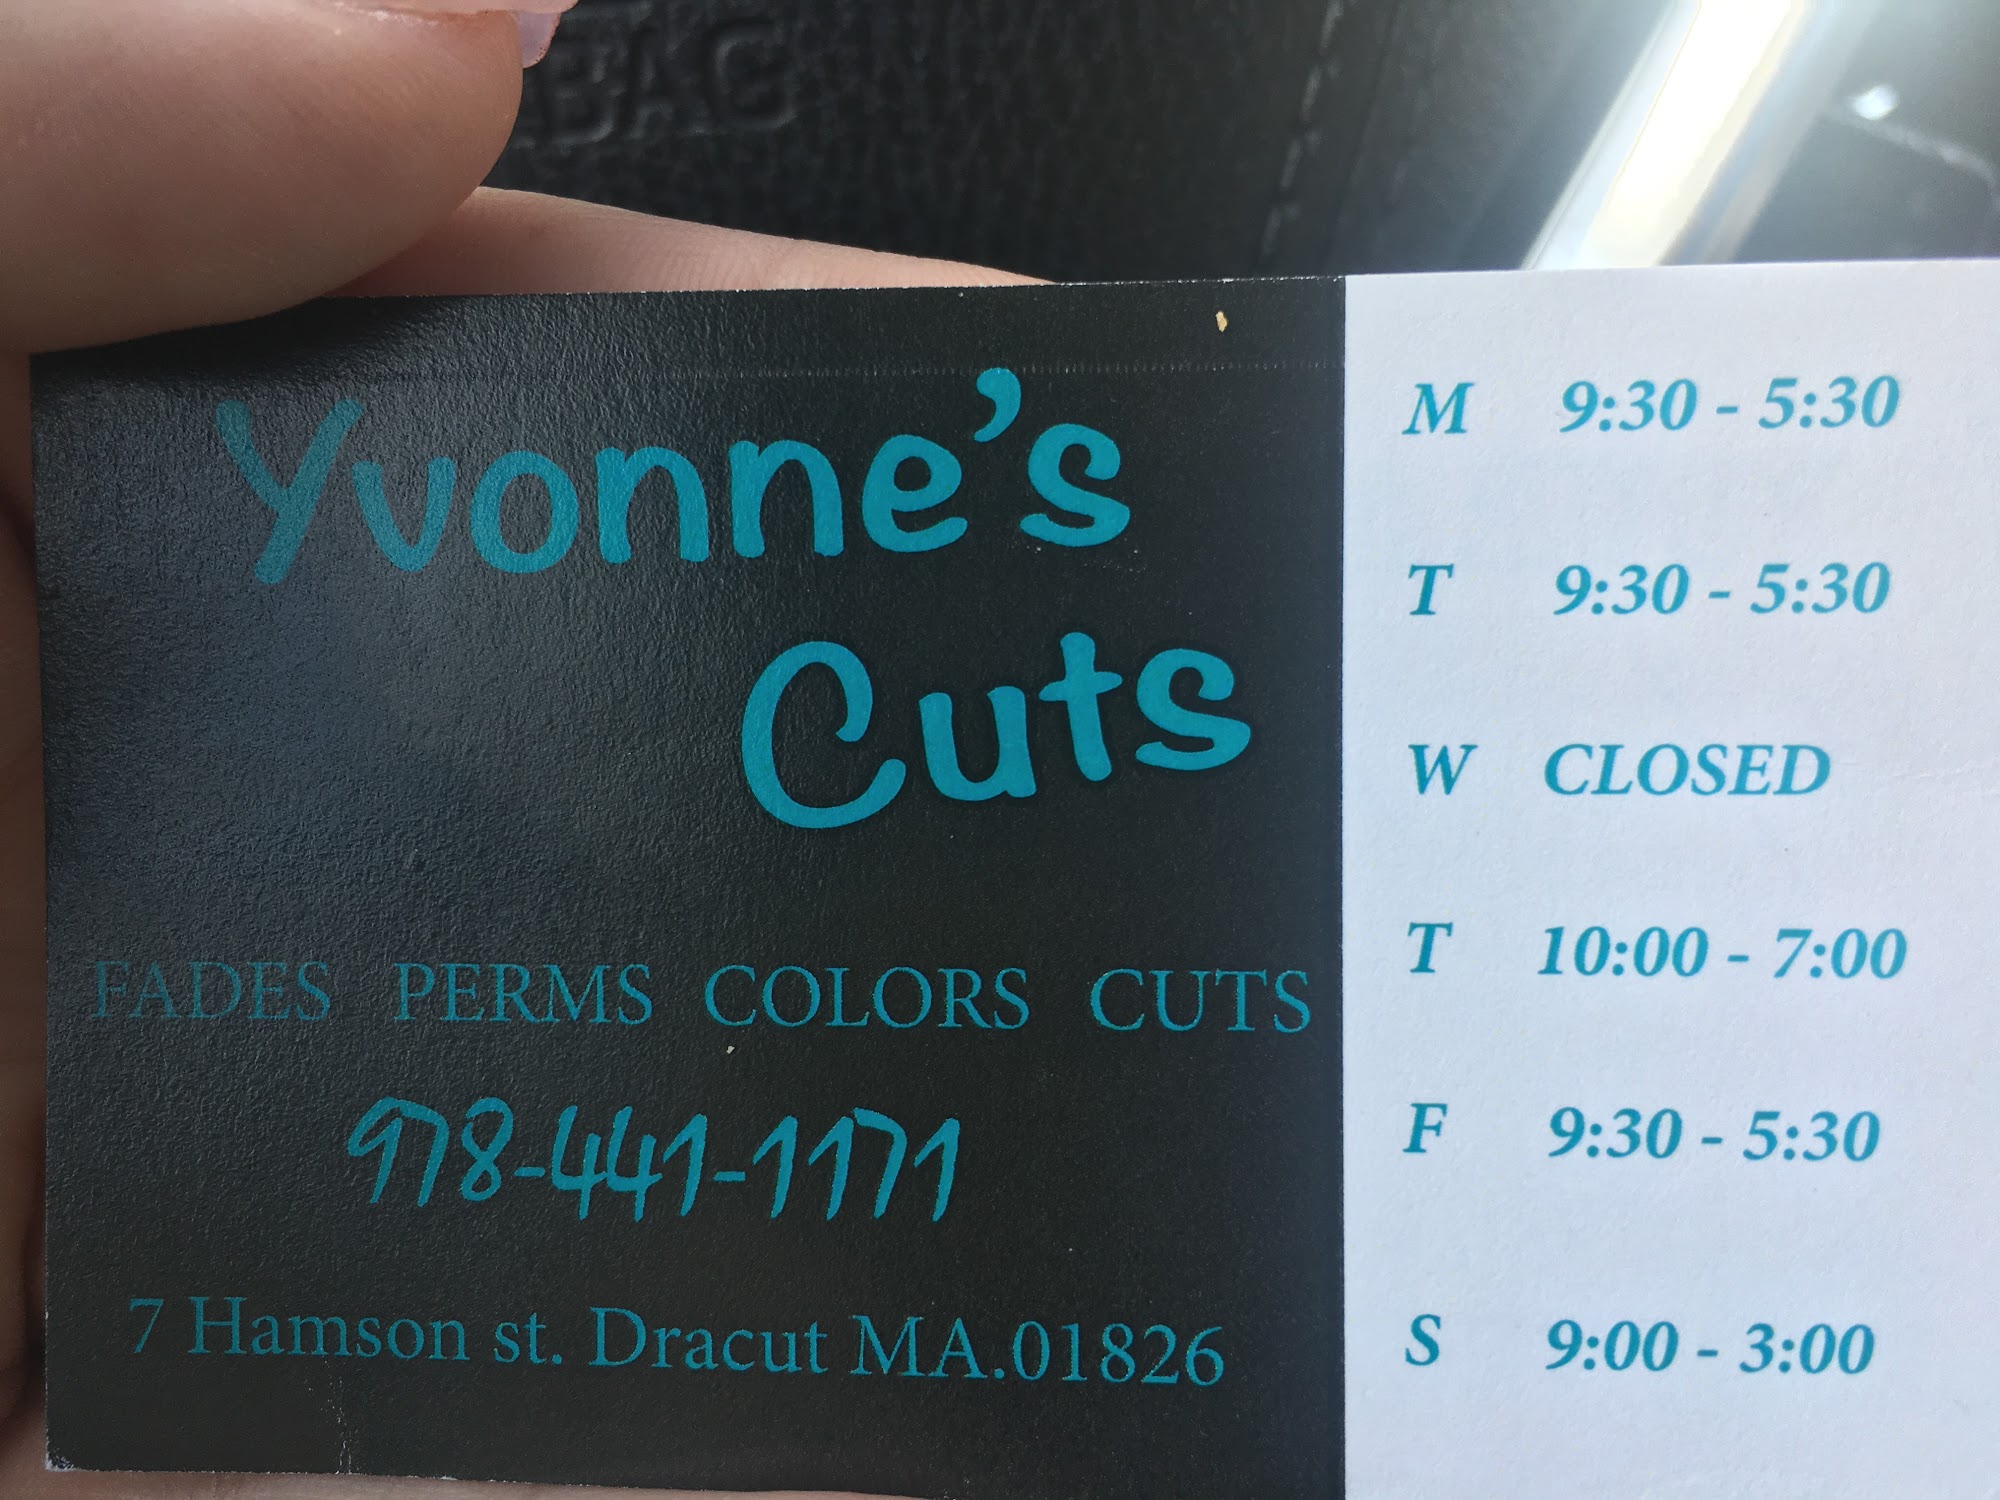 Yvonne's Cuts